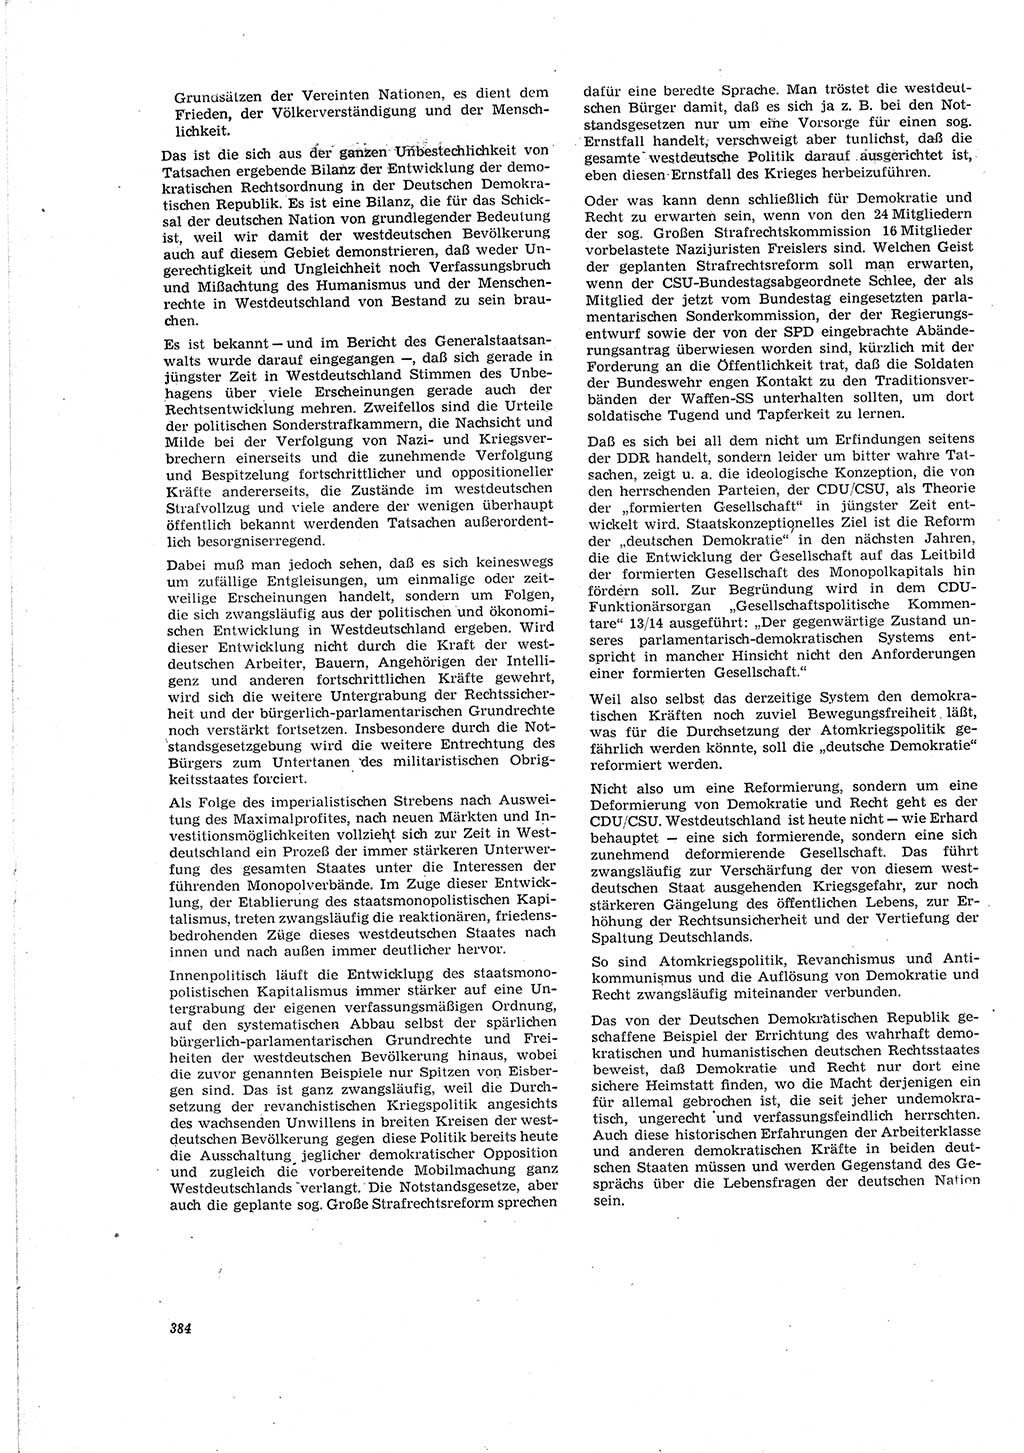 Neue Justiz (NJ), Zeitschrift für Recht und Rechtswissenschaft [Deutsche Demokratische Republik (DDR)], 20. Jahrgang 1966, Seite 384 (NJ DDR 1966, S. 384)